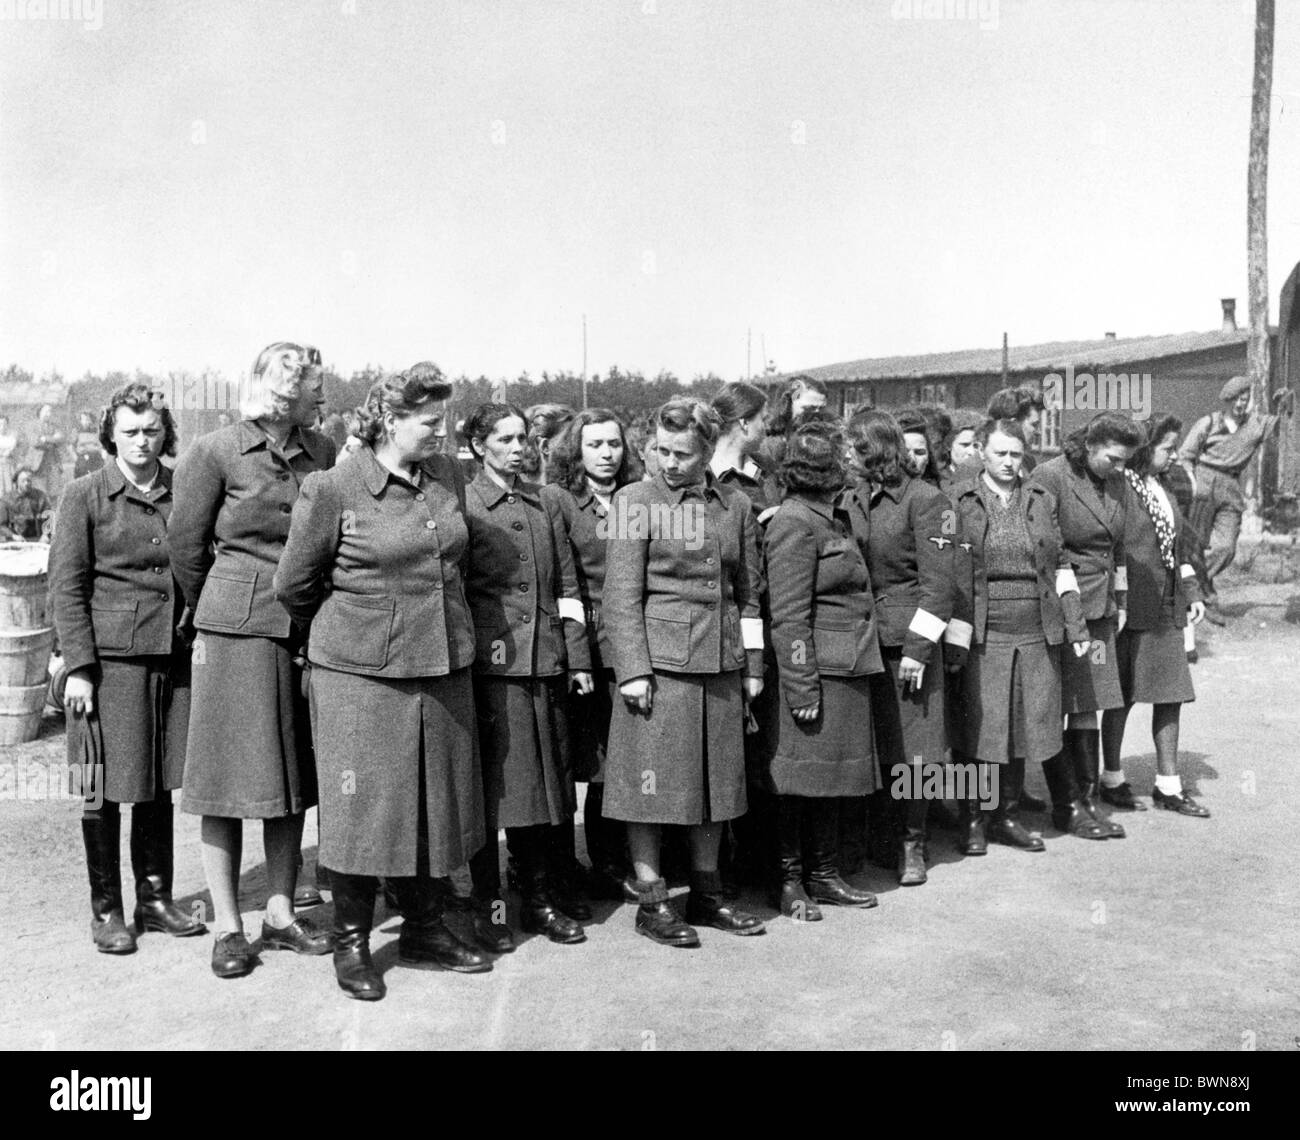 La Seconde Guerre mondiale, des femmes évêques camp de concentration de Bergen-Belsen Allemagne Europe 17 avril 1945 Historique Historique Banque D'Images